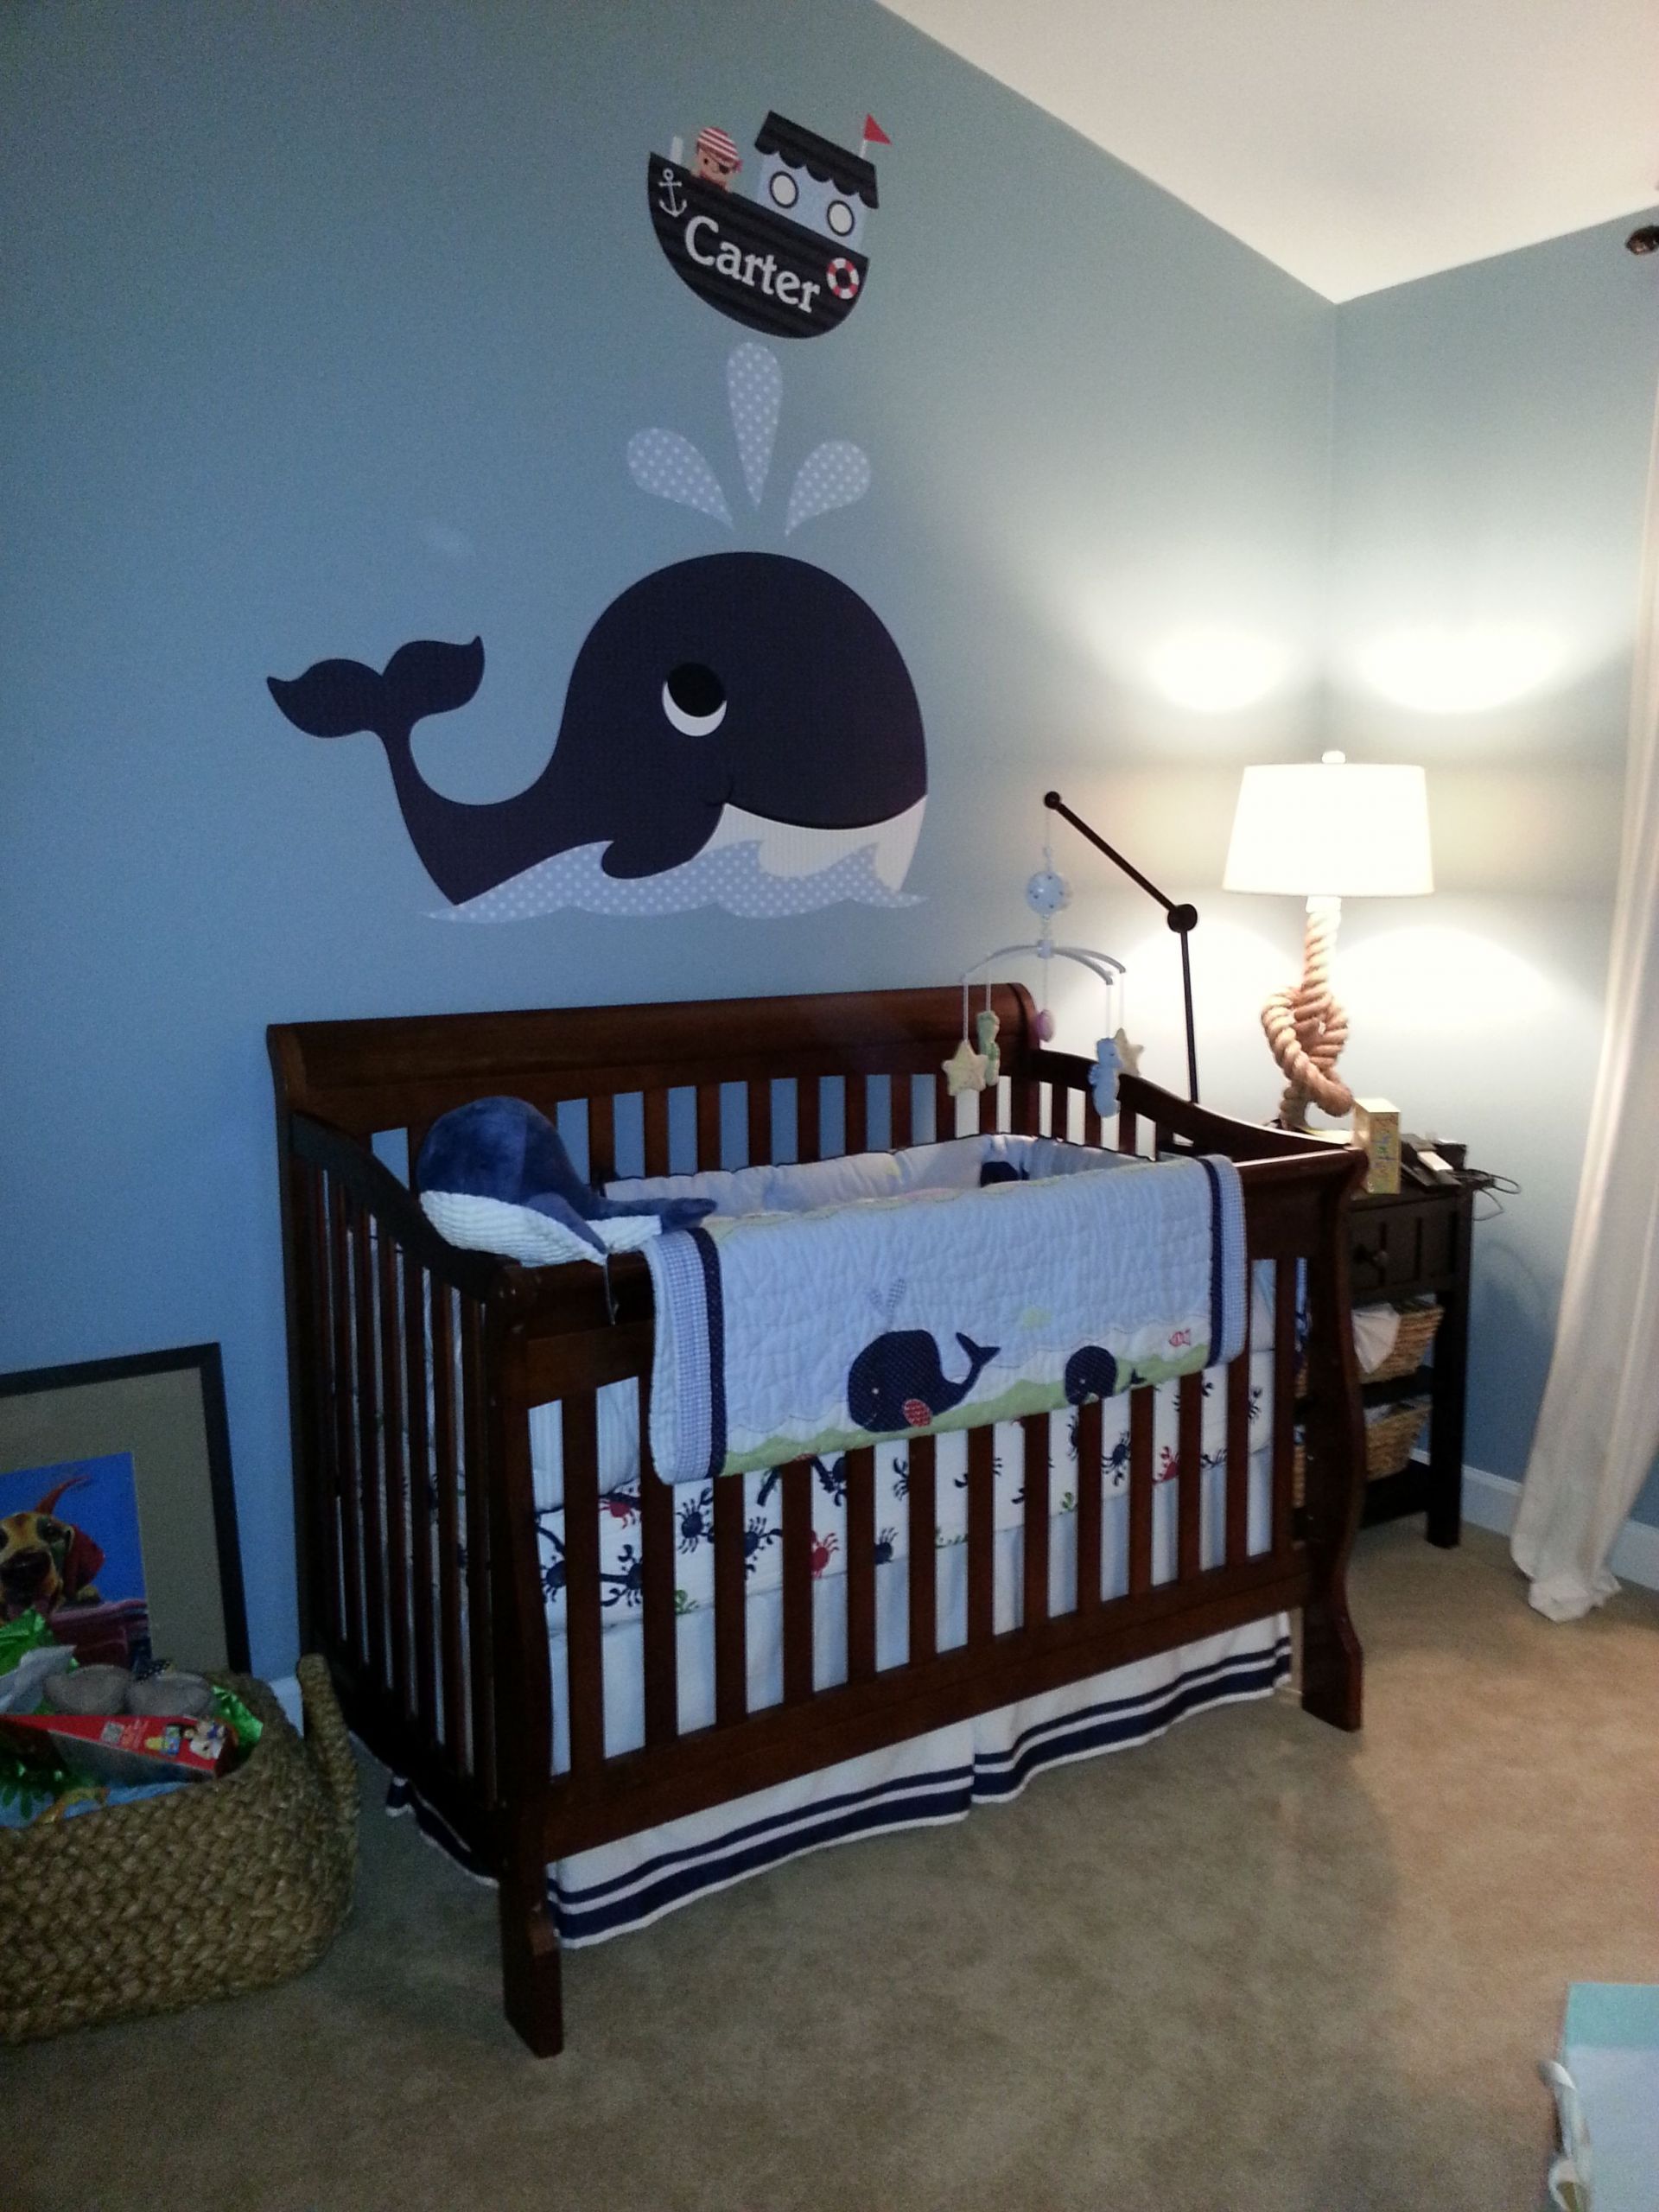 Whale Baby Room Decor
 Whale Nursery Decor TheNurseries